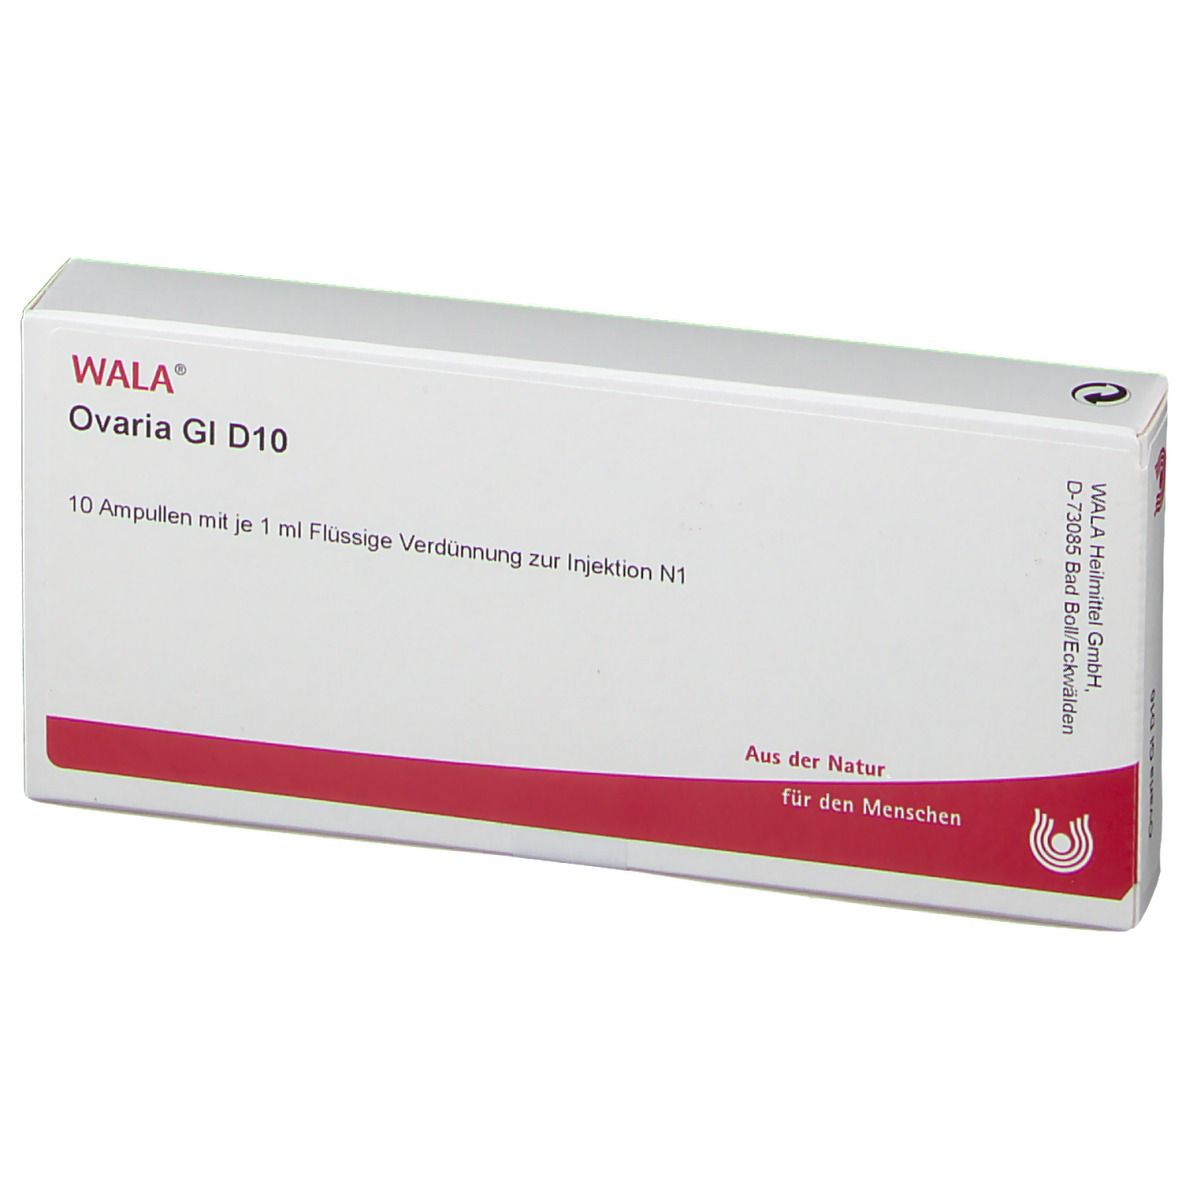 WALA® Ovaria Gl D 10